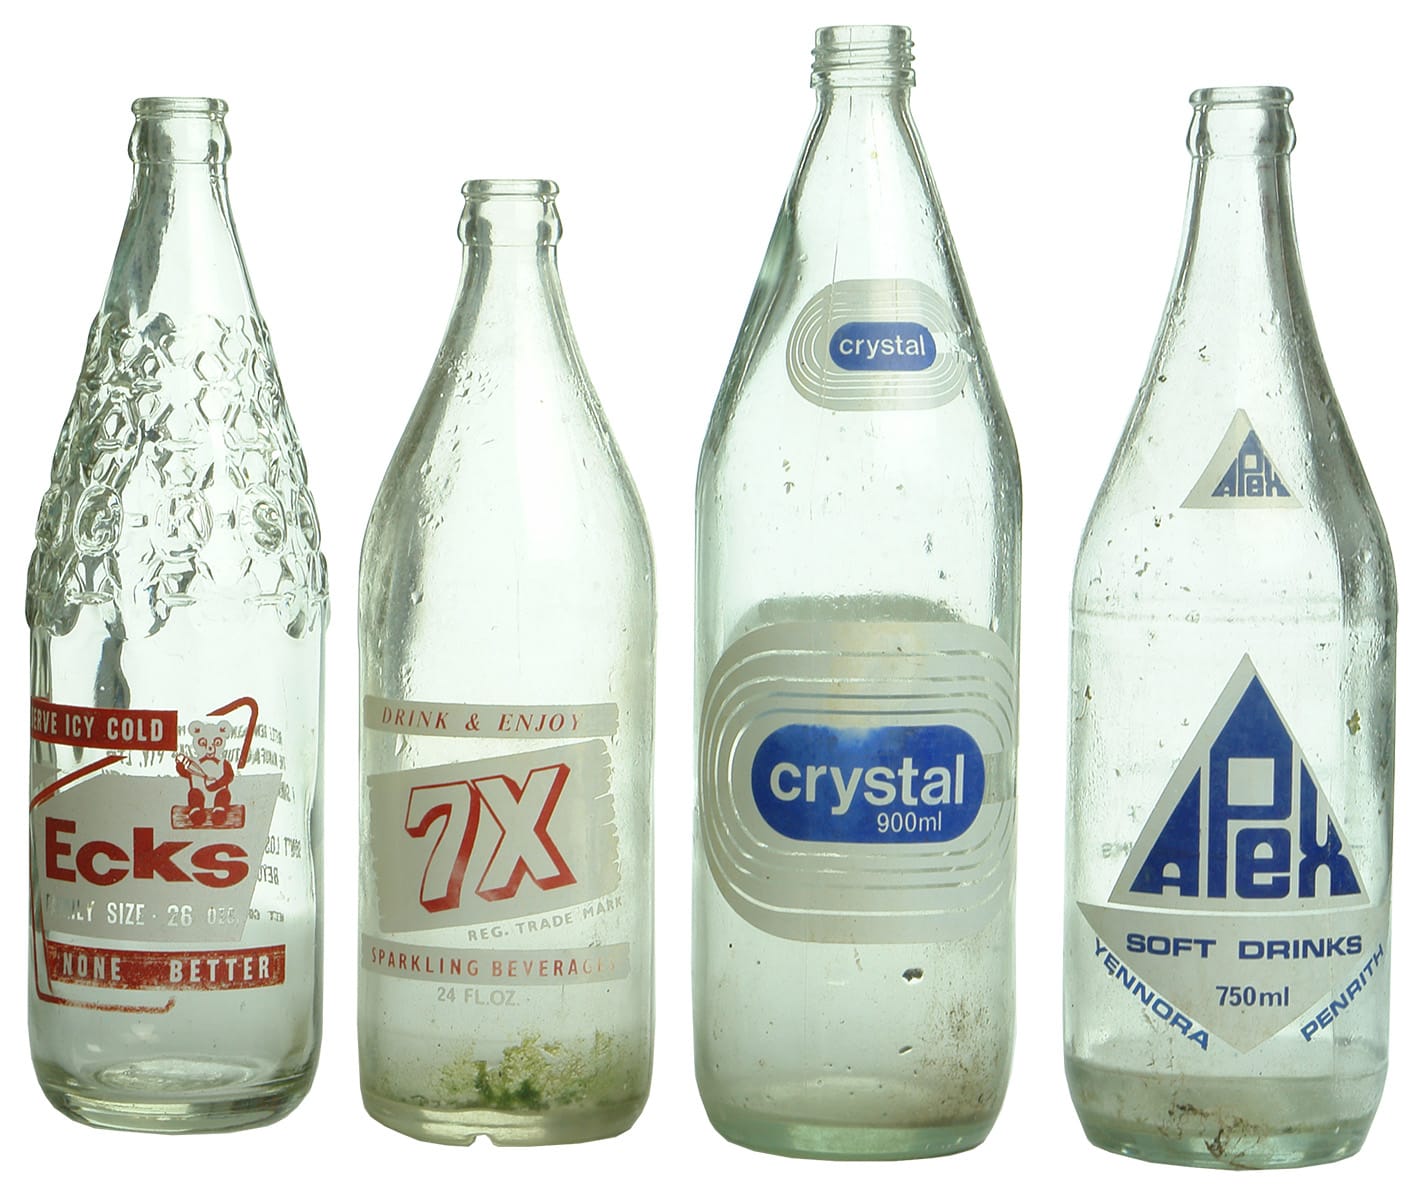 Group Ceramic Label Soft Drink Bottles